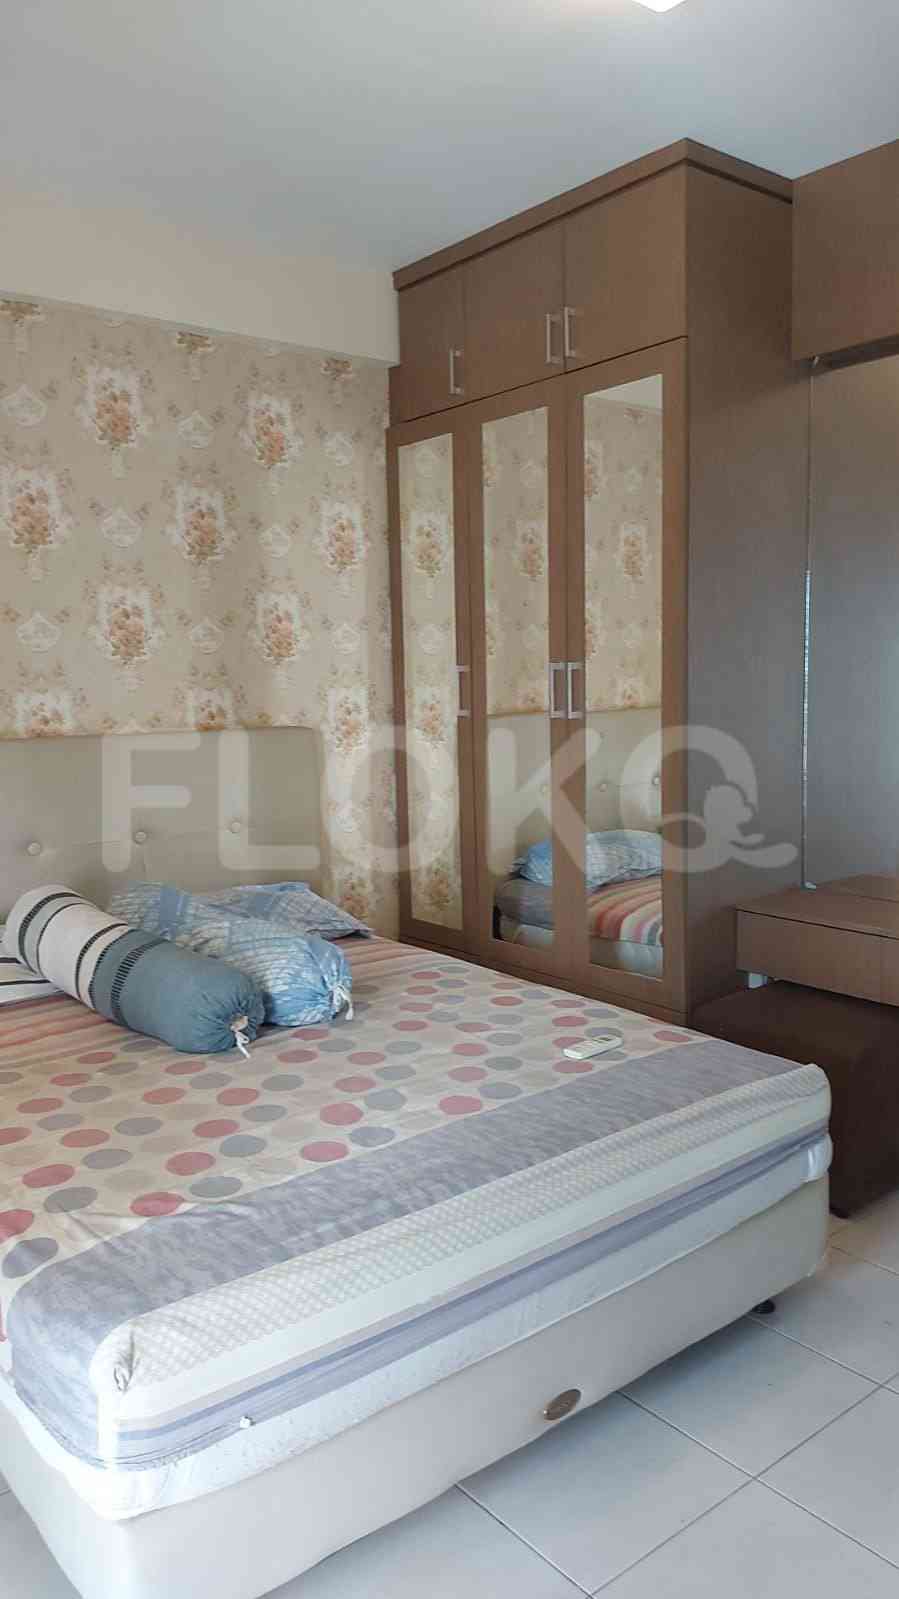 1 Bedroom on 15th Floor for Rent in Tamansari Sudirman - fsu125 1